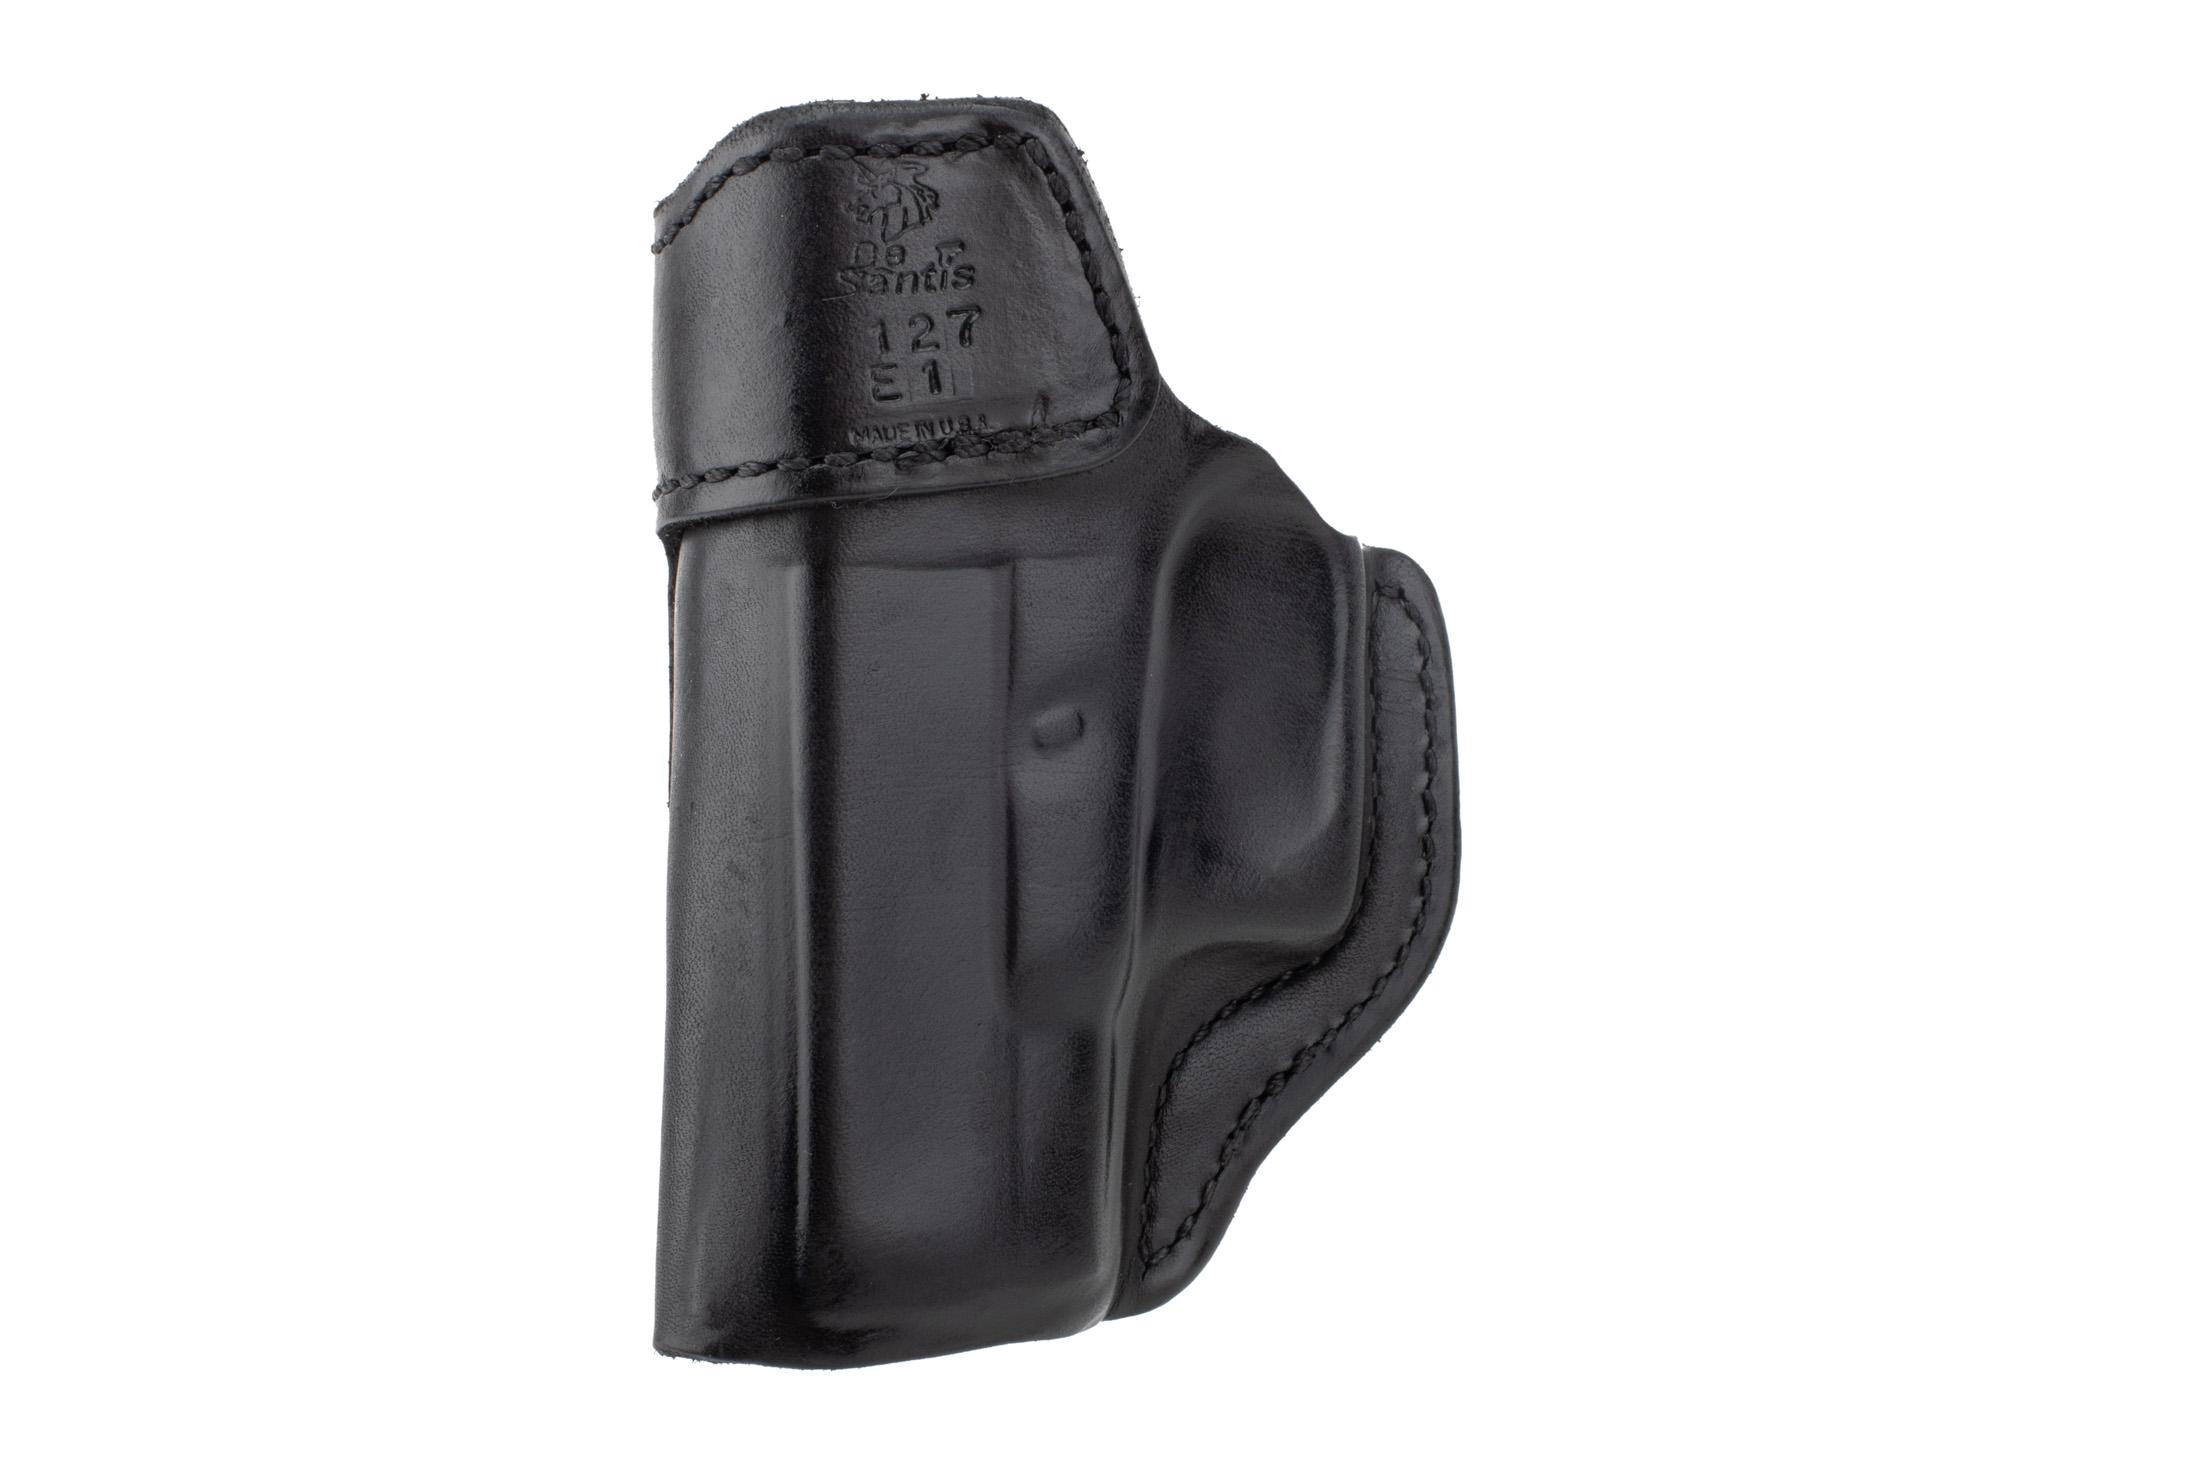 GLOCK Desantis Black Leather Inside Heat IWB Holster for GLOCK 26 27 33 G33 G27 G26 L 